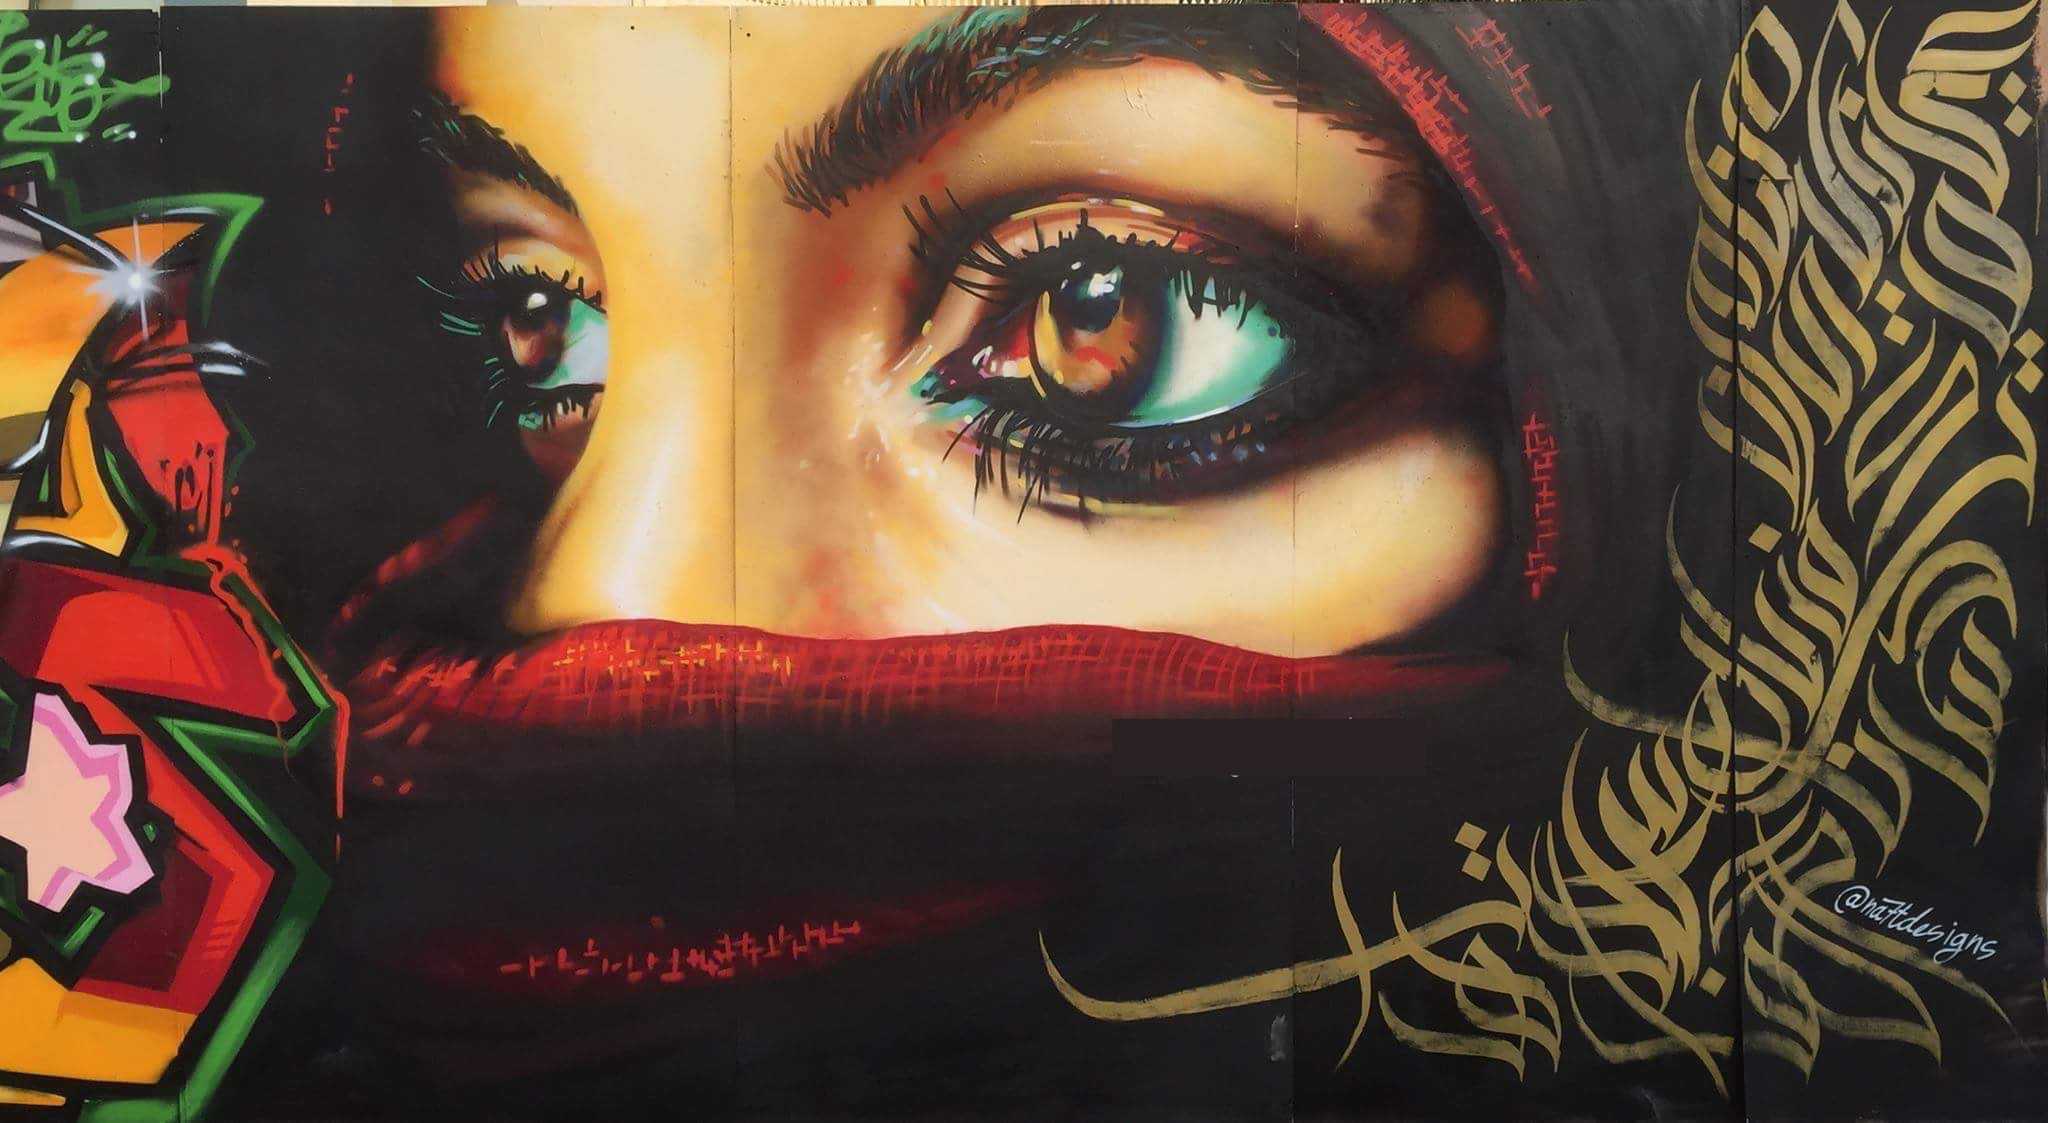 Spark in the eyes - Graffiti art